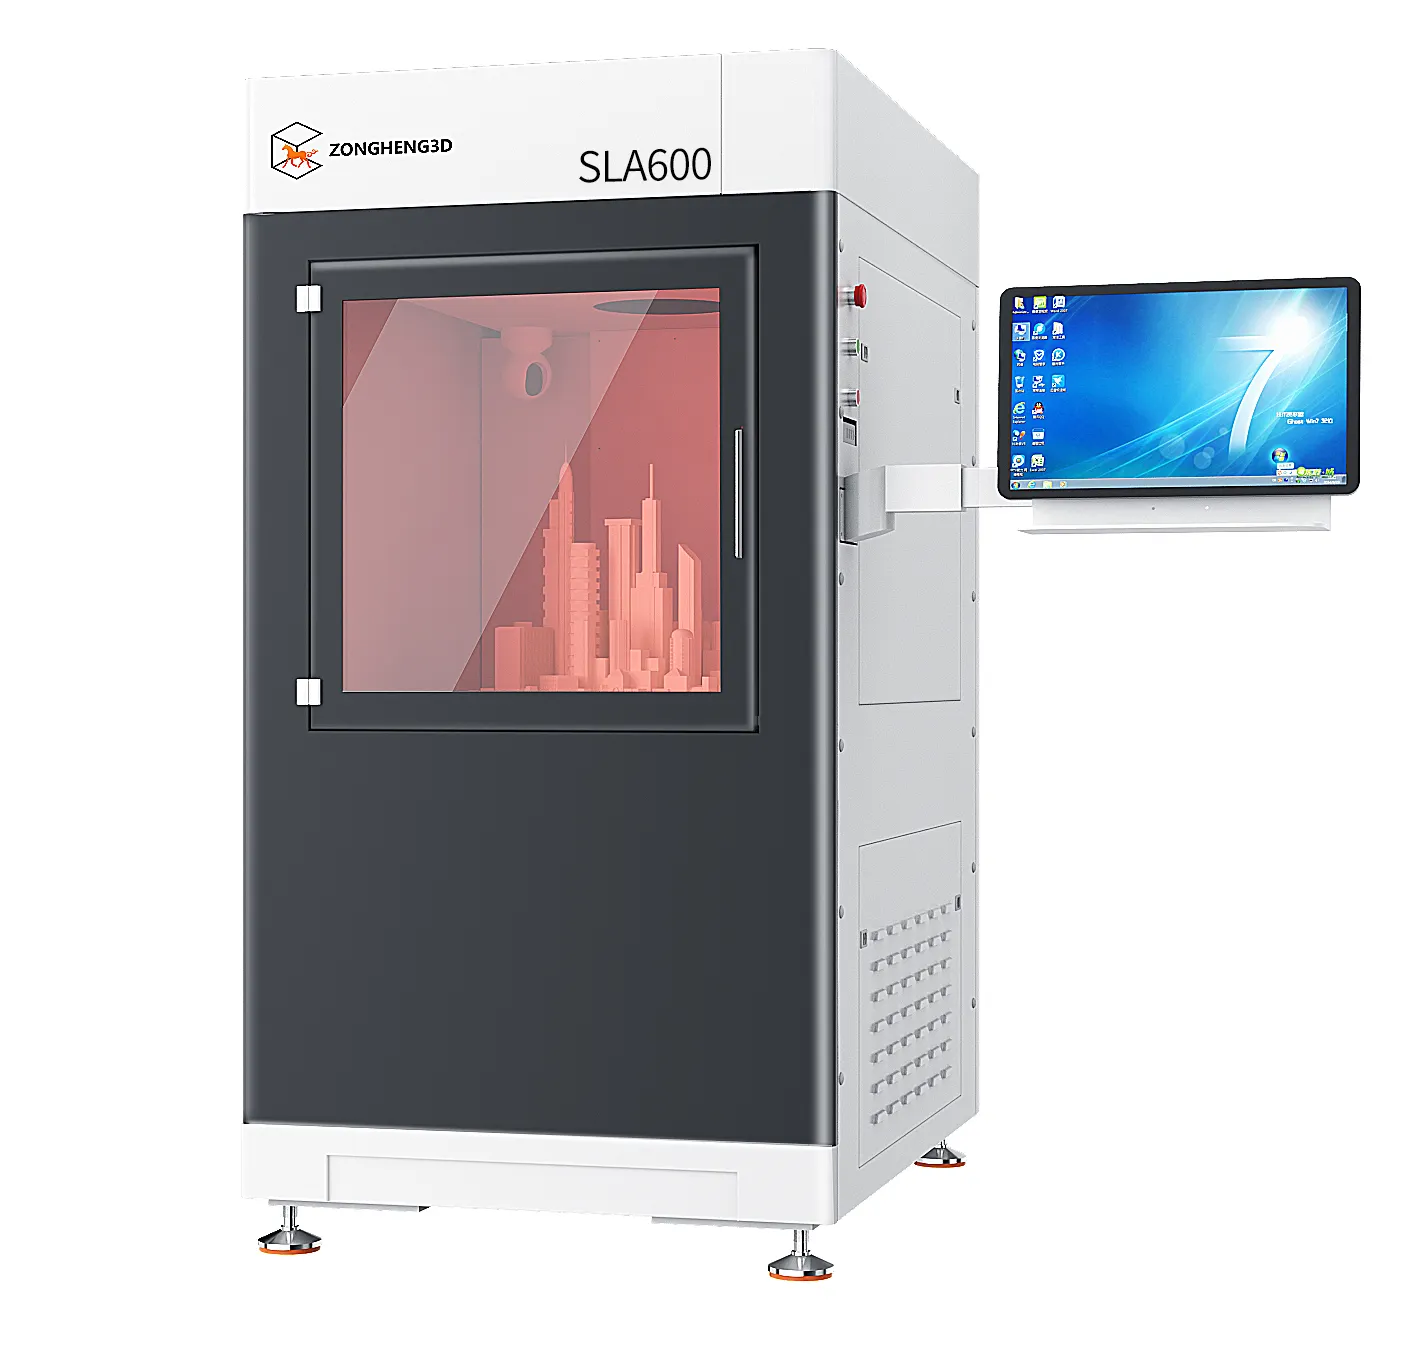 Super Maker Sla600 Is Een Innovatieve 3D-printer Voor De Productie Van Grote Componenten. Maat Aanpasbaar